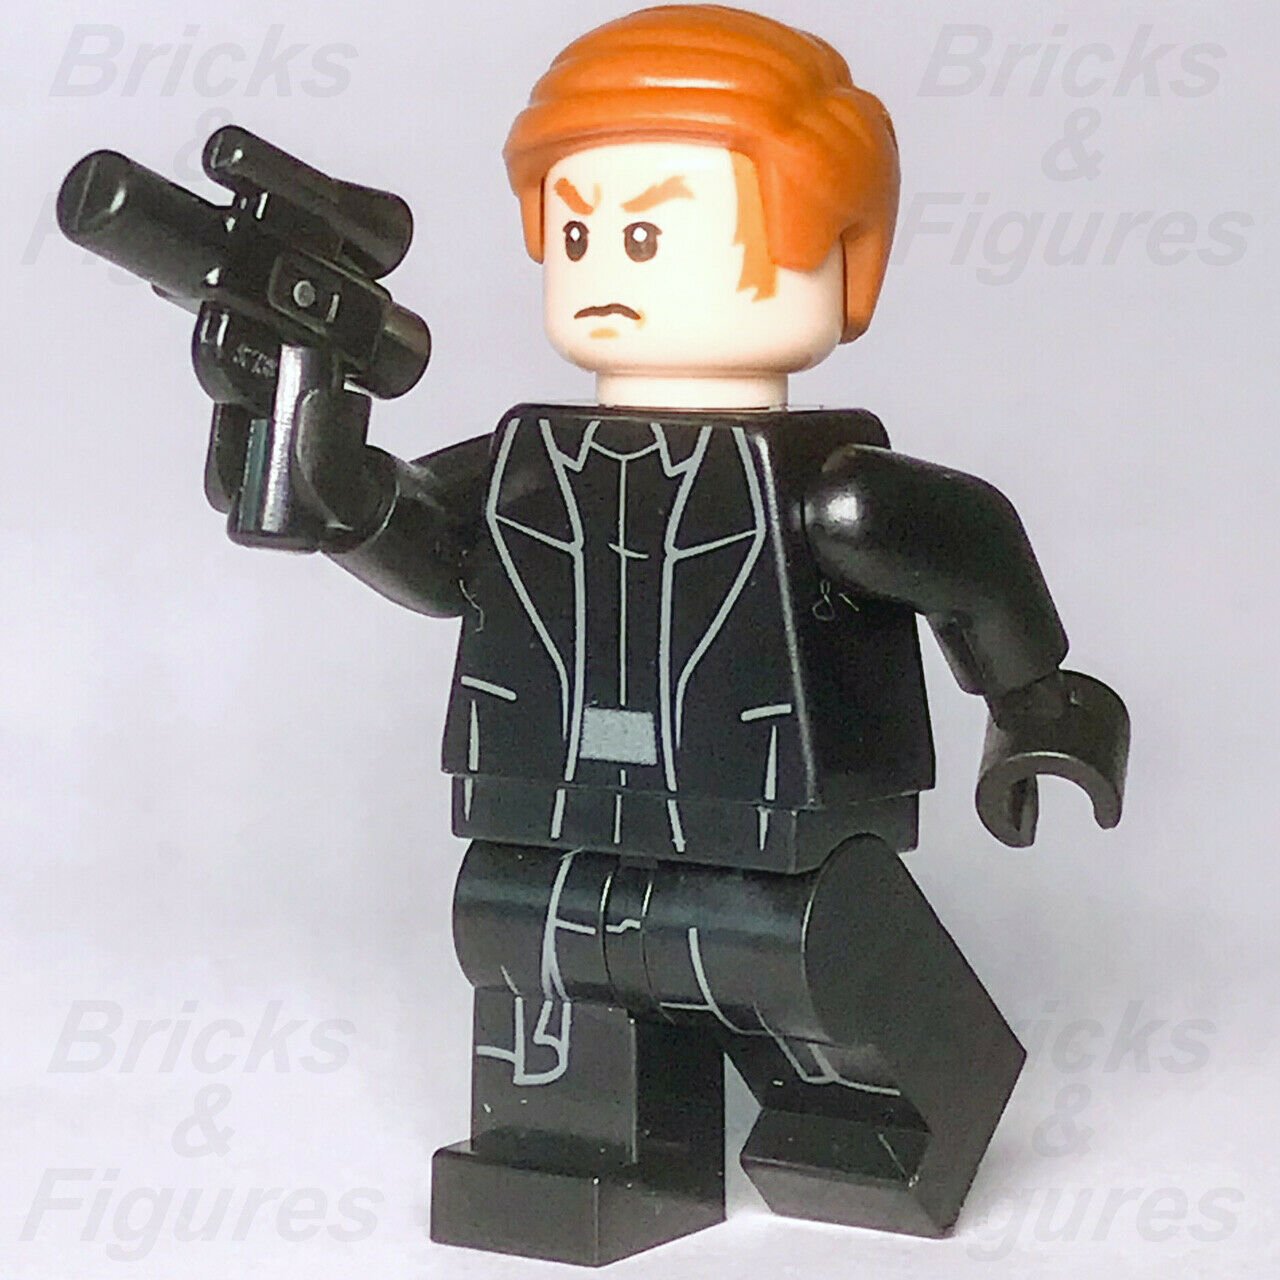 New Star Wars LEGO General Hux First Order The Last Jedi Minifigure 75177 - Bricks & Figures